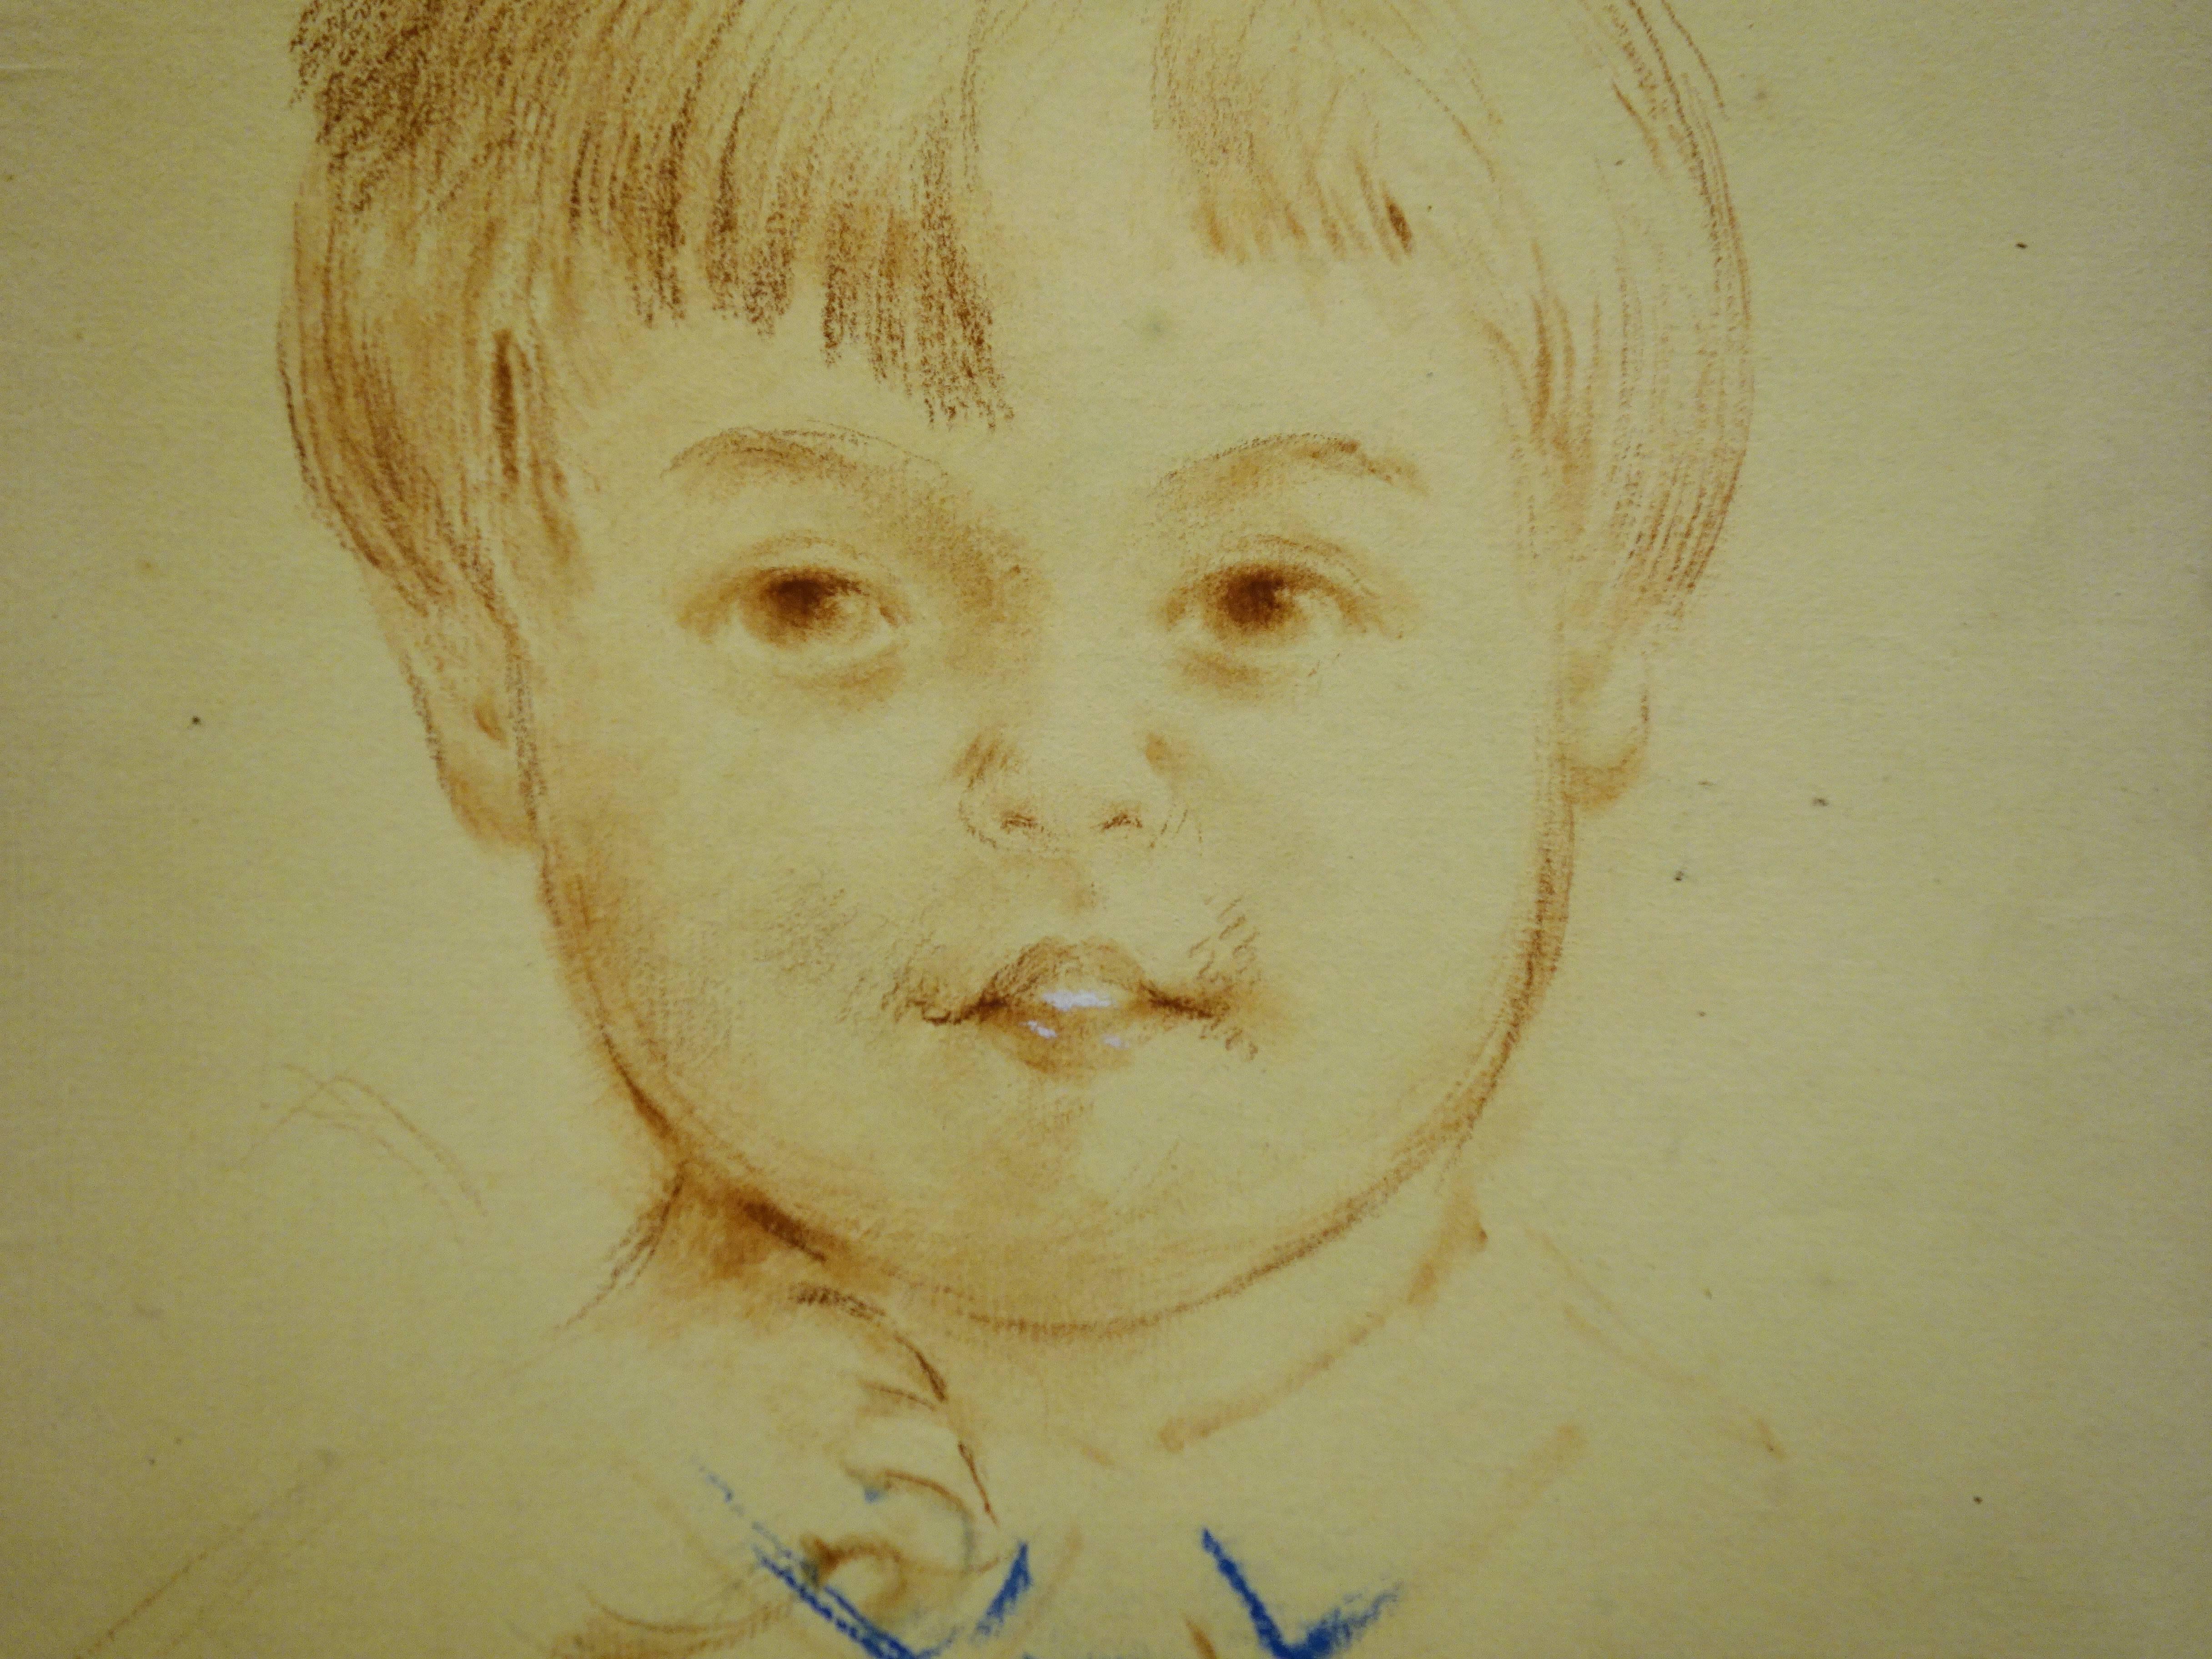 Jeune garçon qui sourit - Dessin original au fusain  - Réalisme Art par Gustave Poetzsch